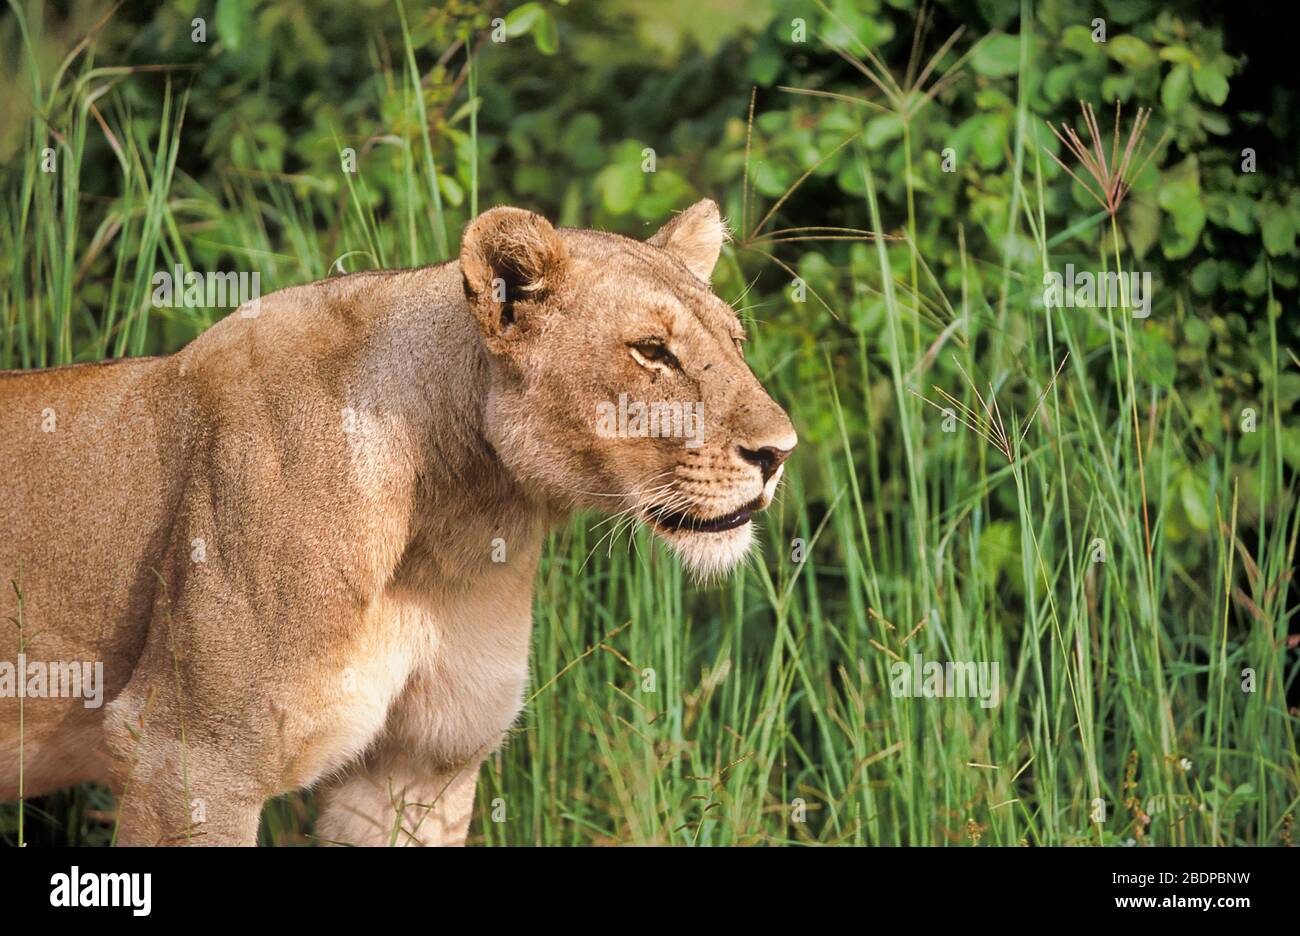 Lion, Panthera leo, Zimbabwe, Africa, female, standing, Looking, growling Stock Photo